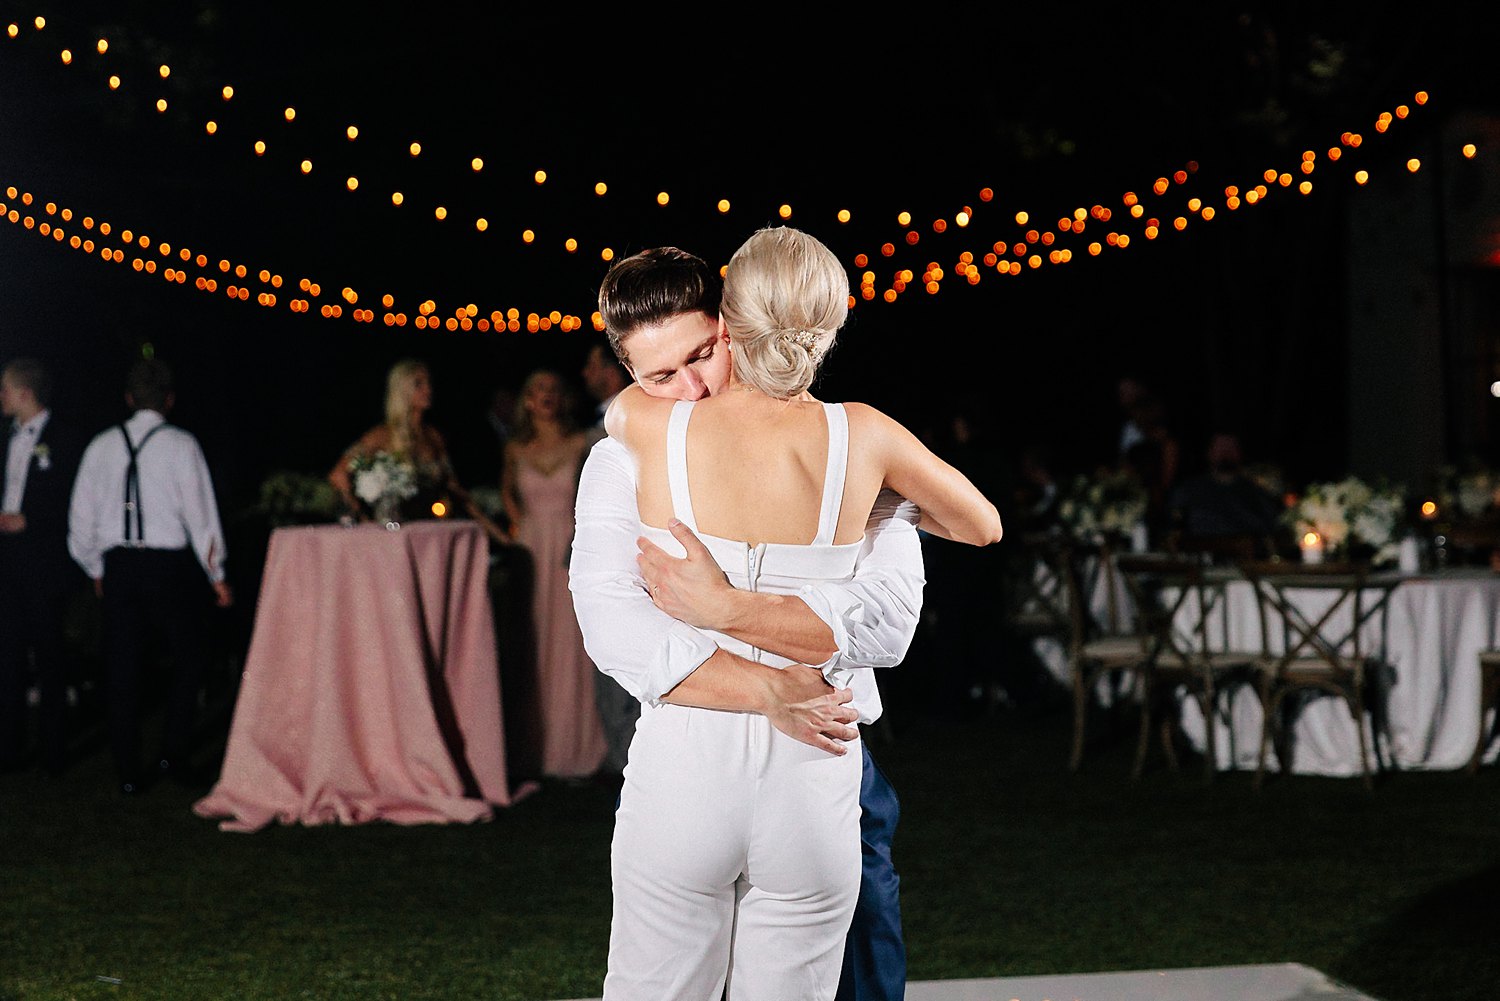 Bride and groom reception outdoors dallas arboretum wedding hugging